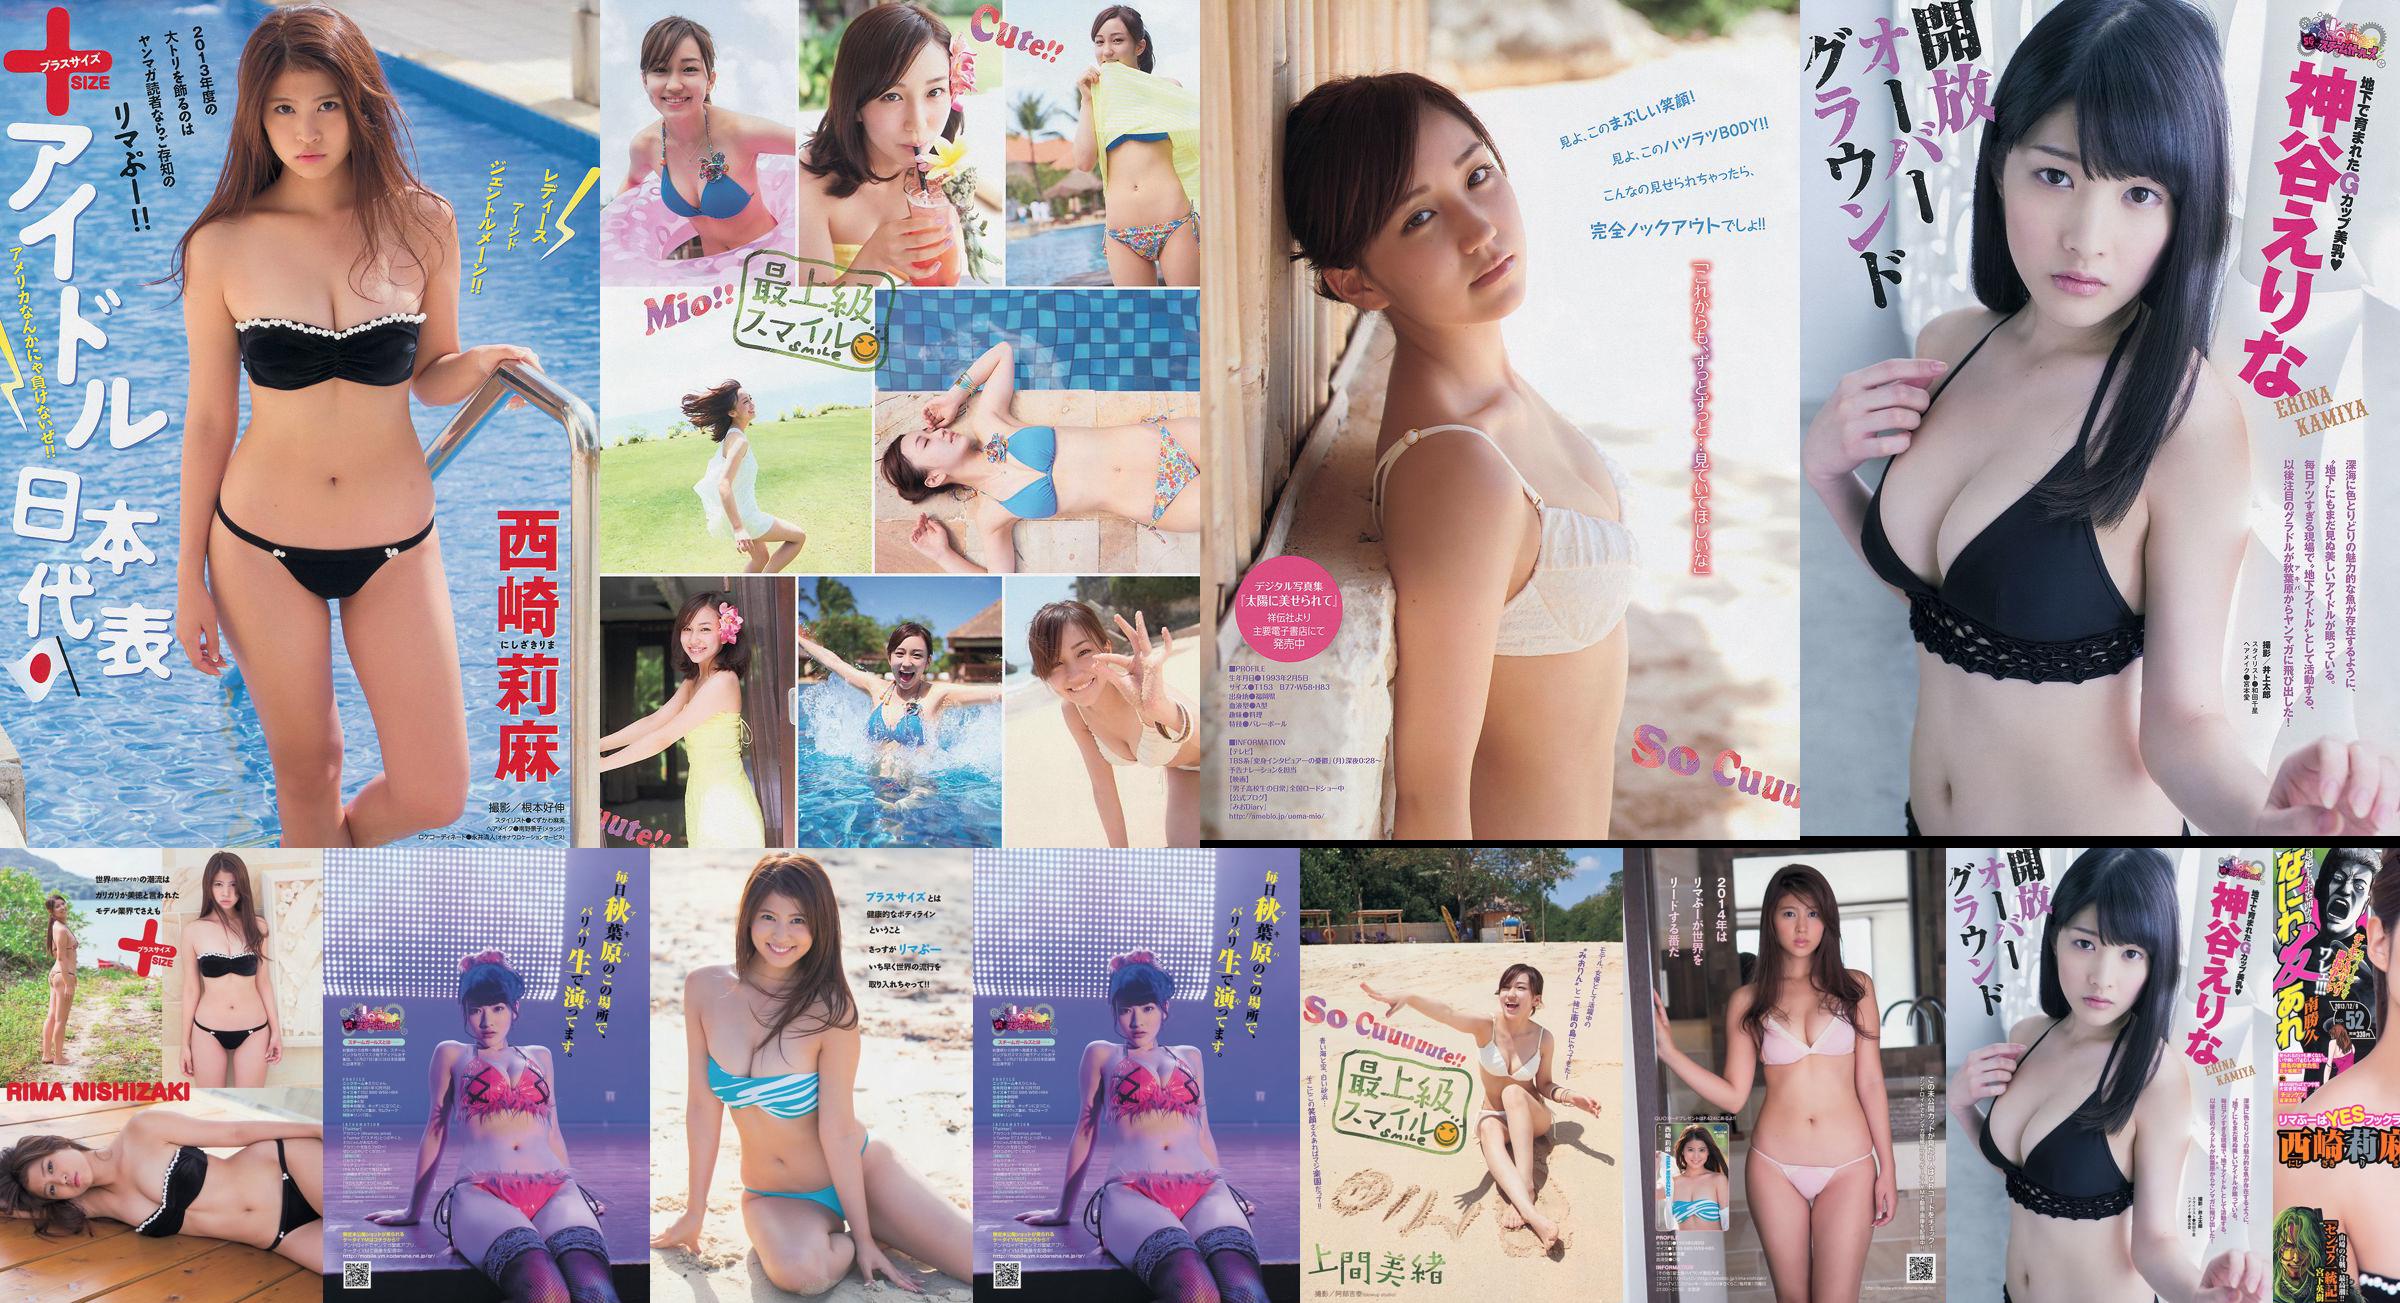 [Majalah Muda] Rima Nishizaki Mio Uema Erina Kamiya 2013 No.52 Foto Moshi No.463677 Halaman 1